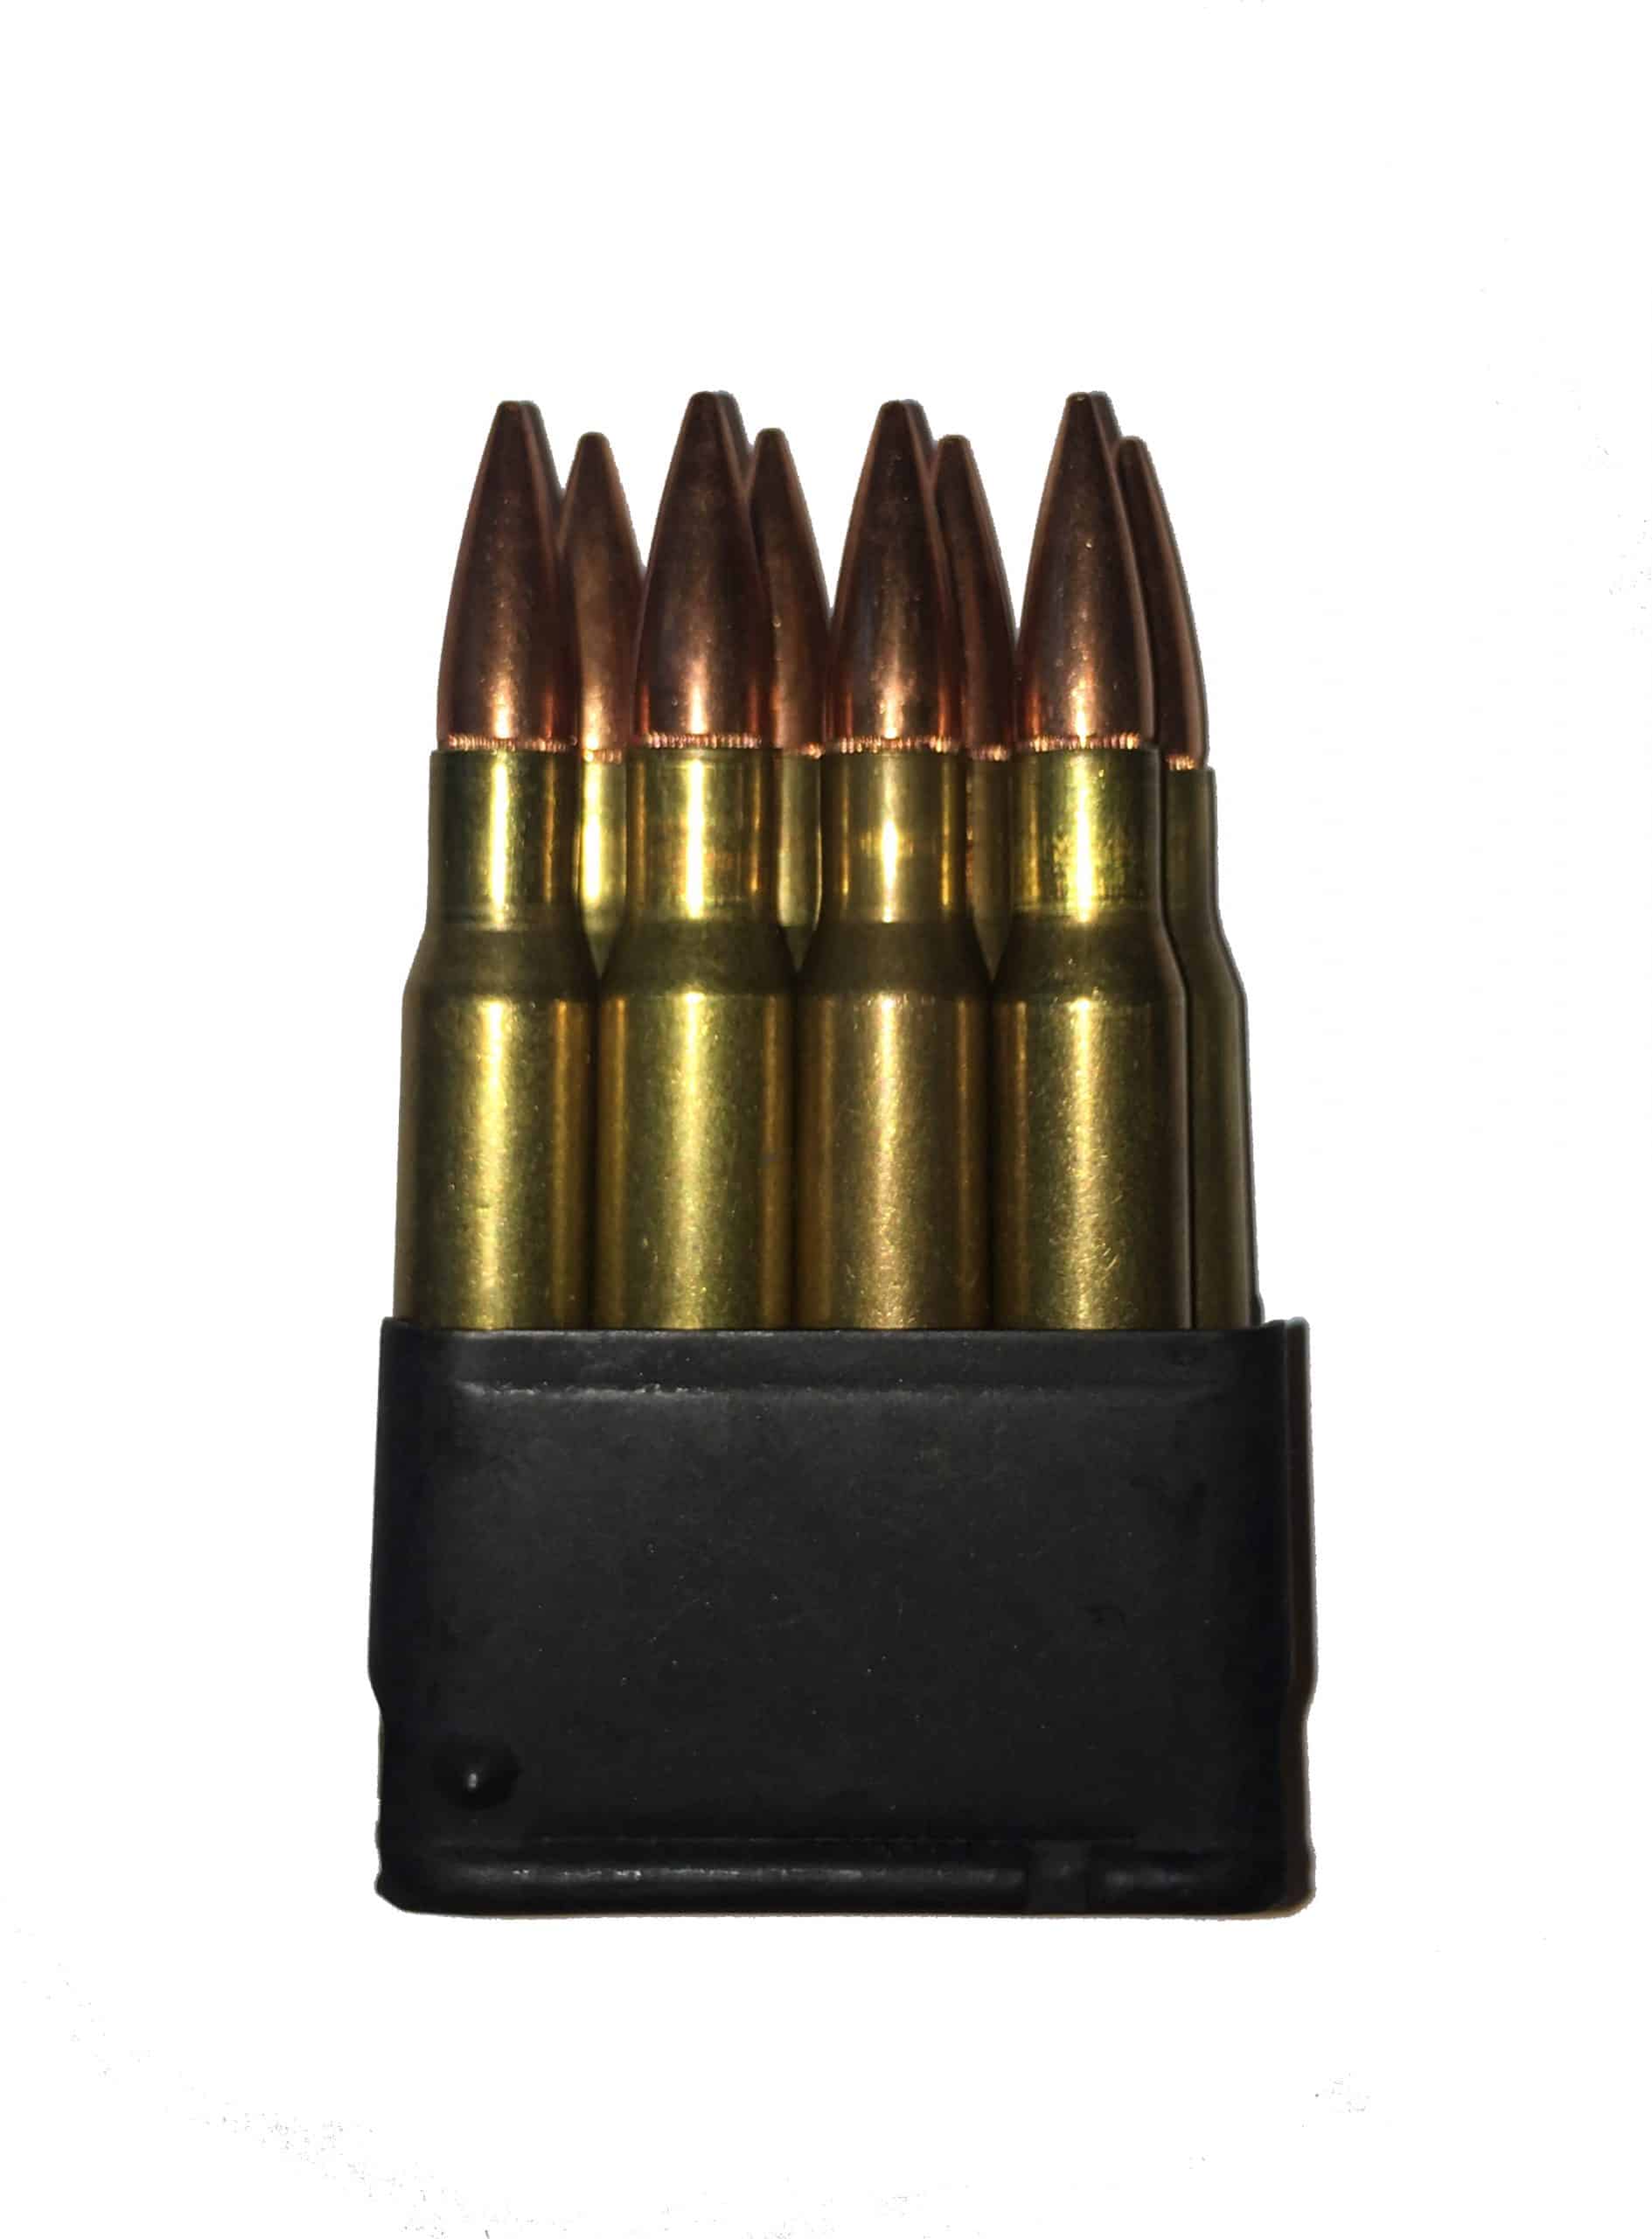 M1 Garand Enbloc 30-06 dummy rounds snap caps fake bullets J&M Spec INERT